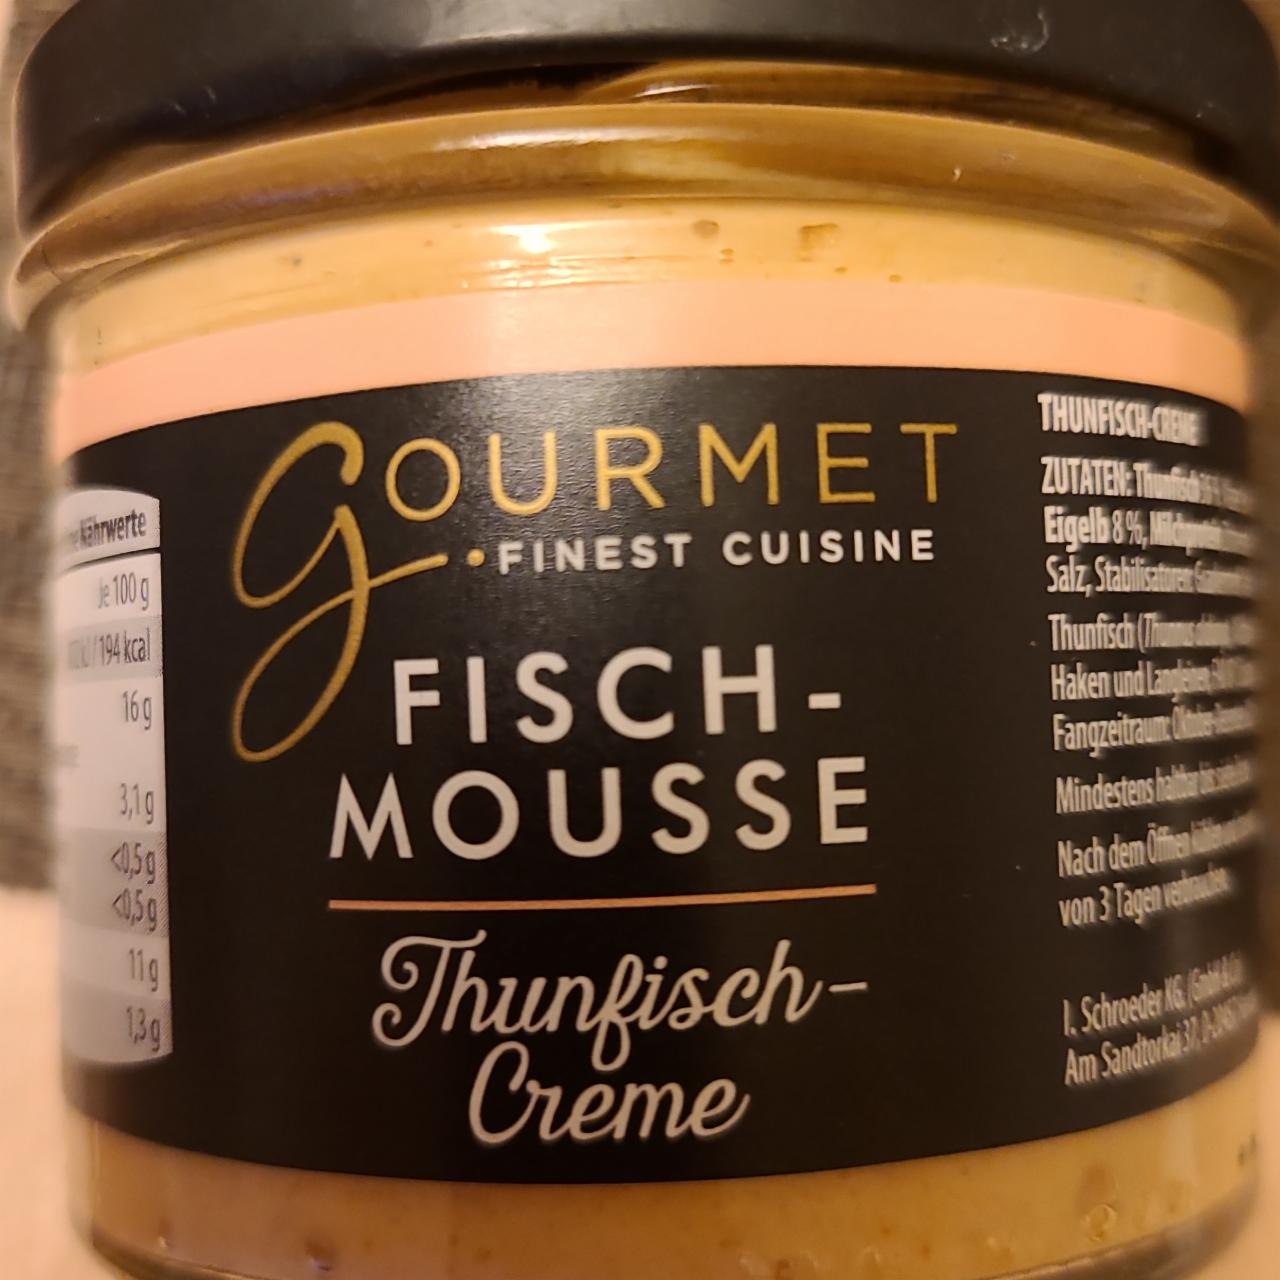 Fotografie - Fisch-mousse Thunfisch-creme Gourmet